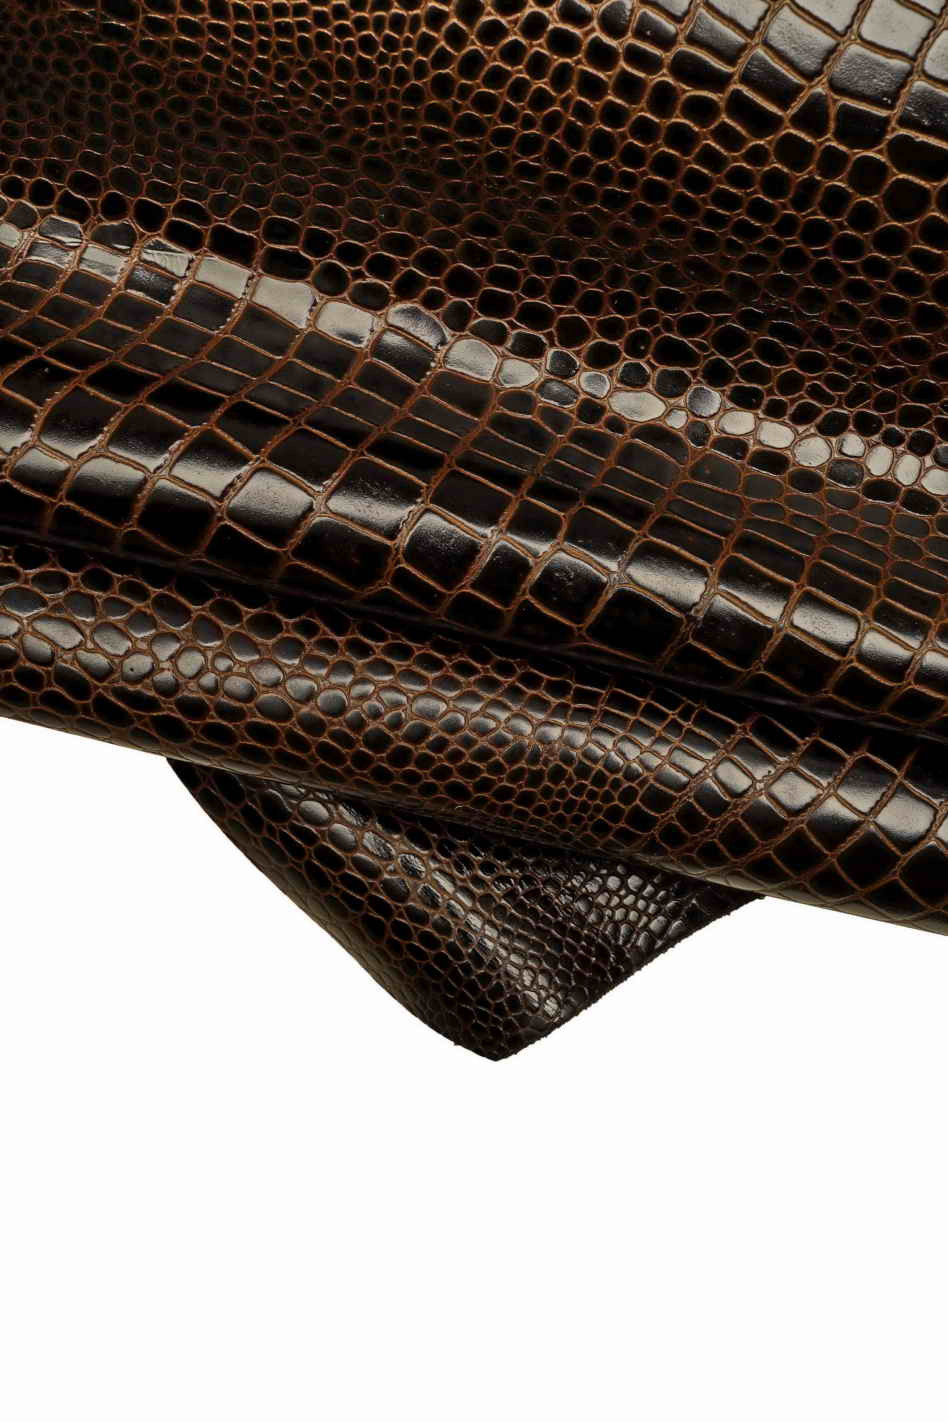 GENUINE leather hide CALFSKIN dark brown crocodile embossed